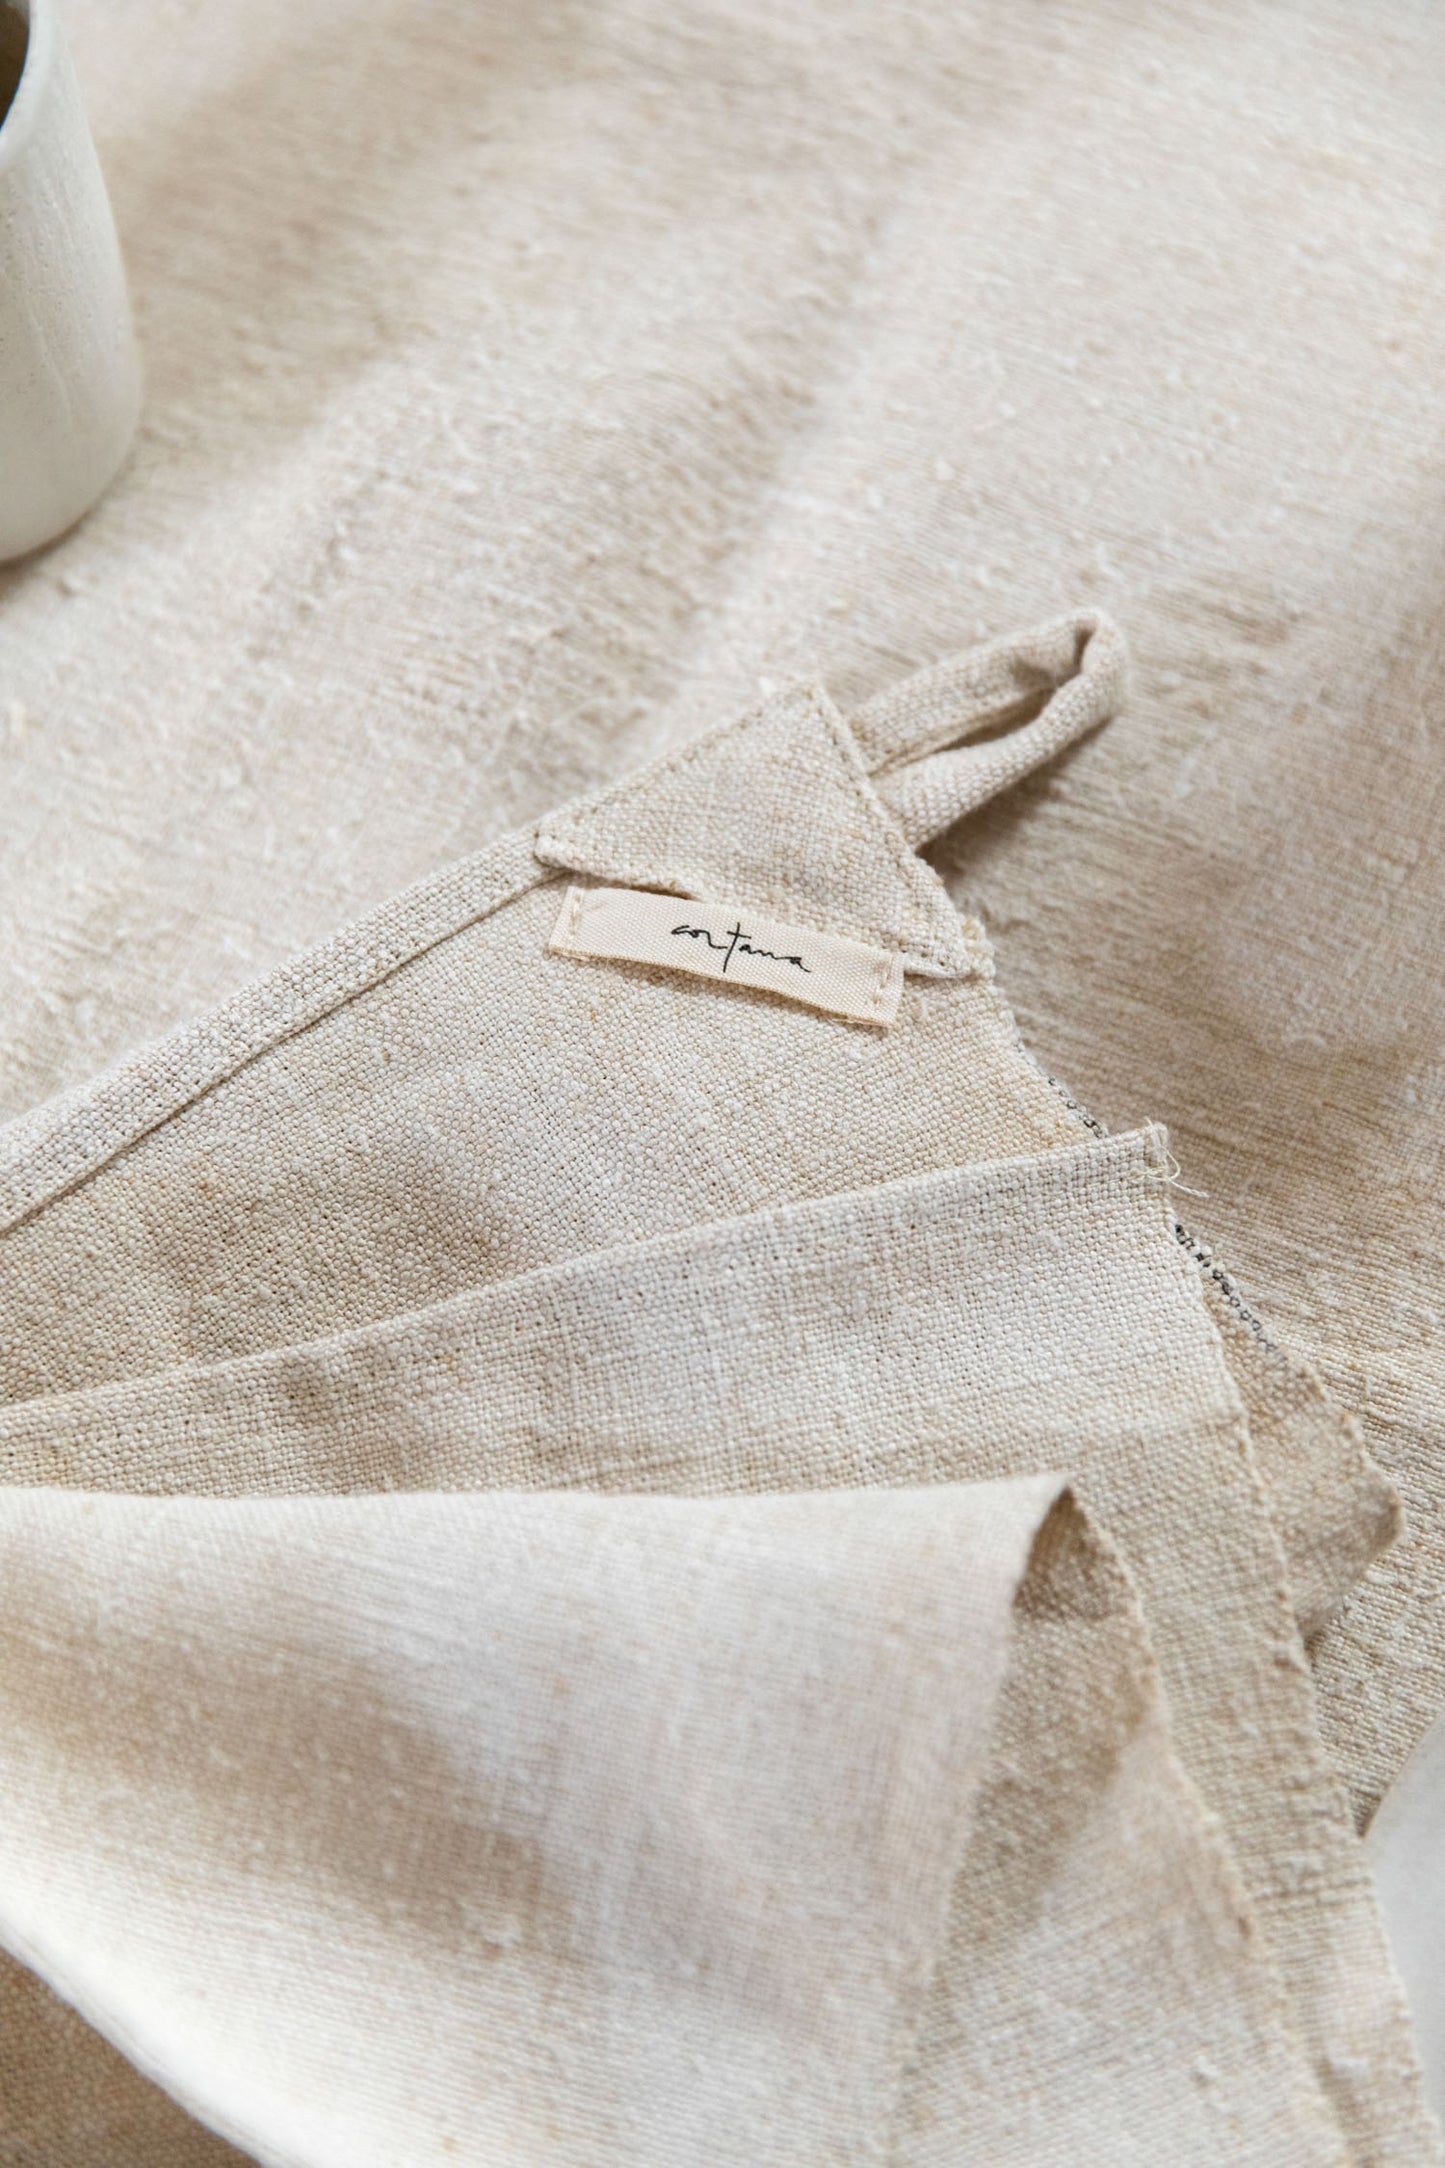 Tea towel in antique linen